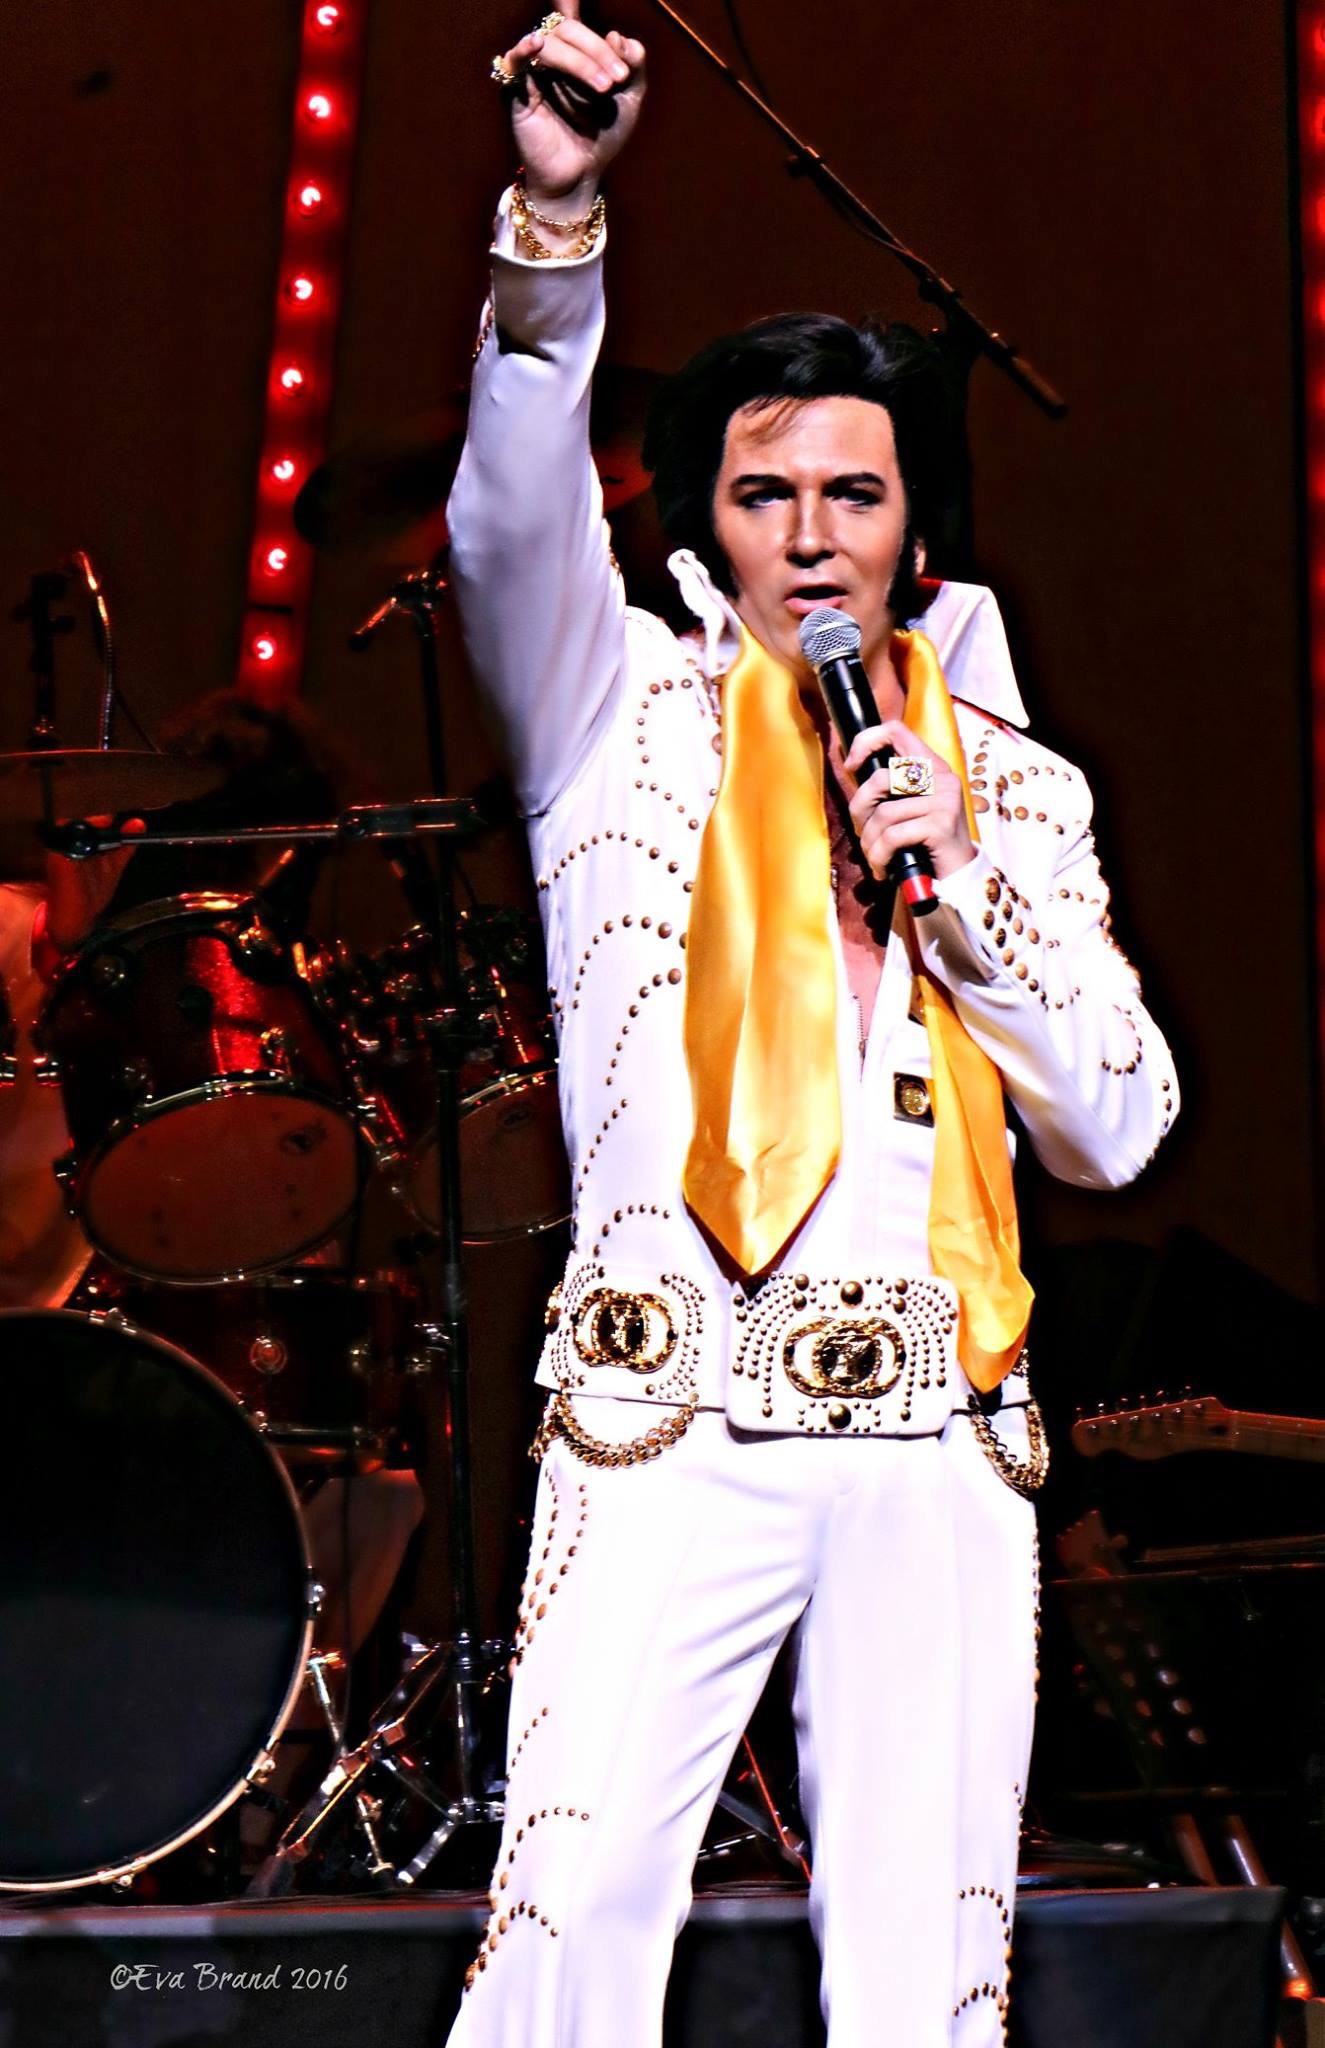 ドワイト・アイゼンハワー 来日公演 「Elvis On Stage in Mahoroza」